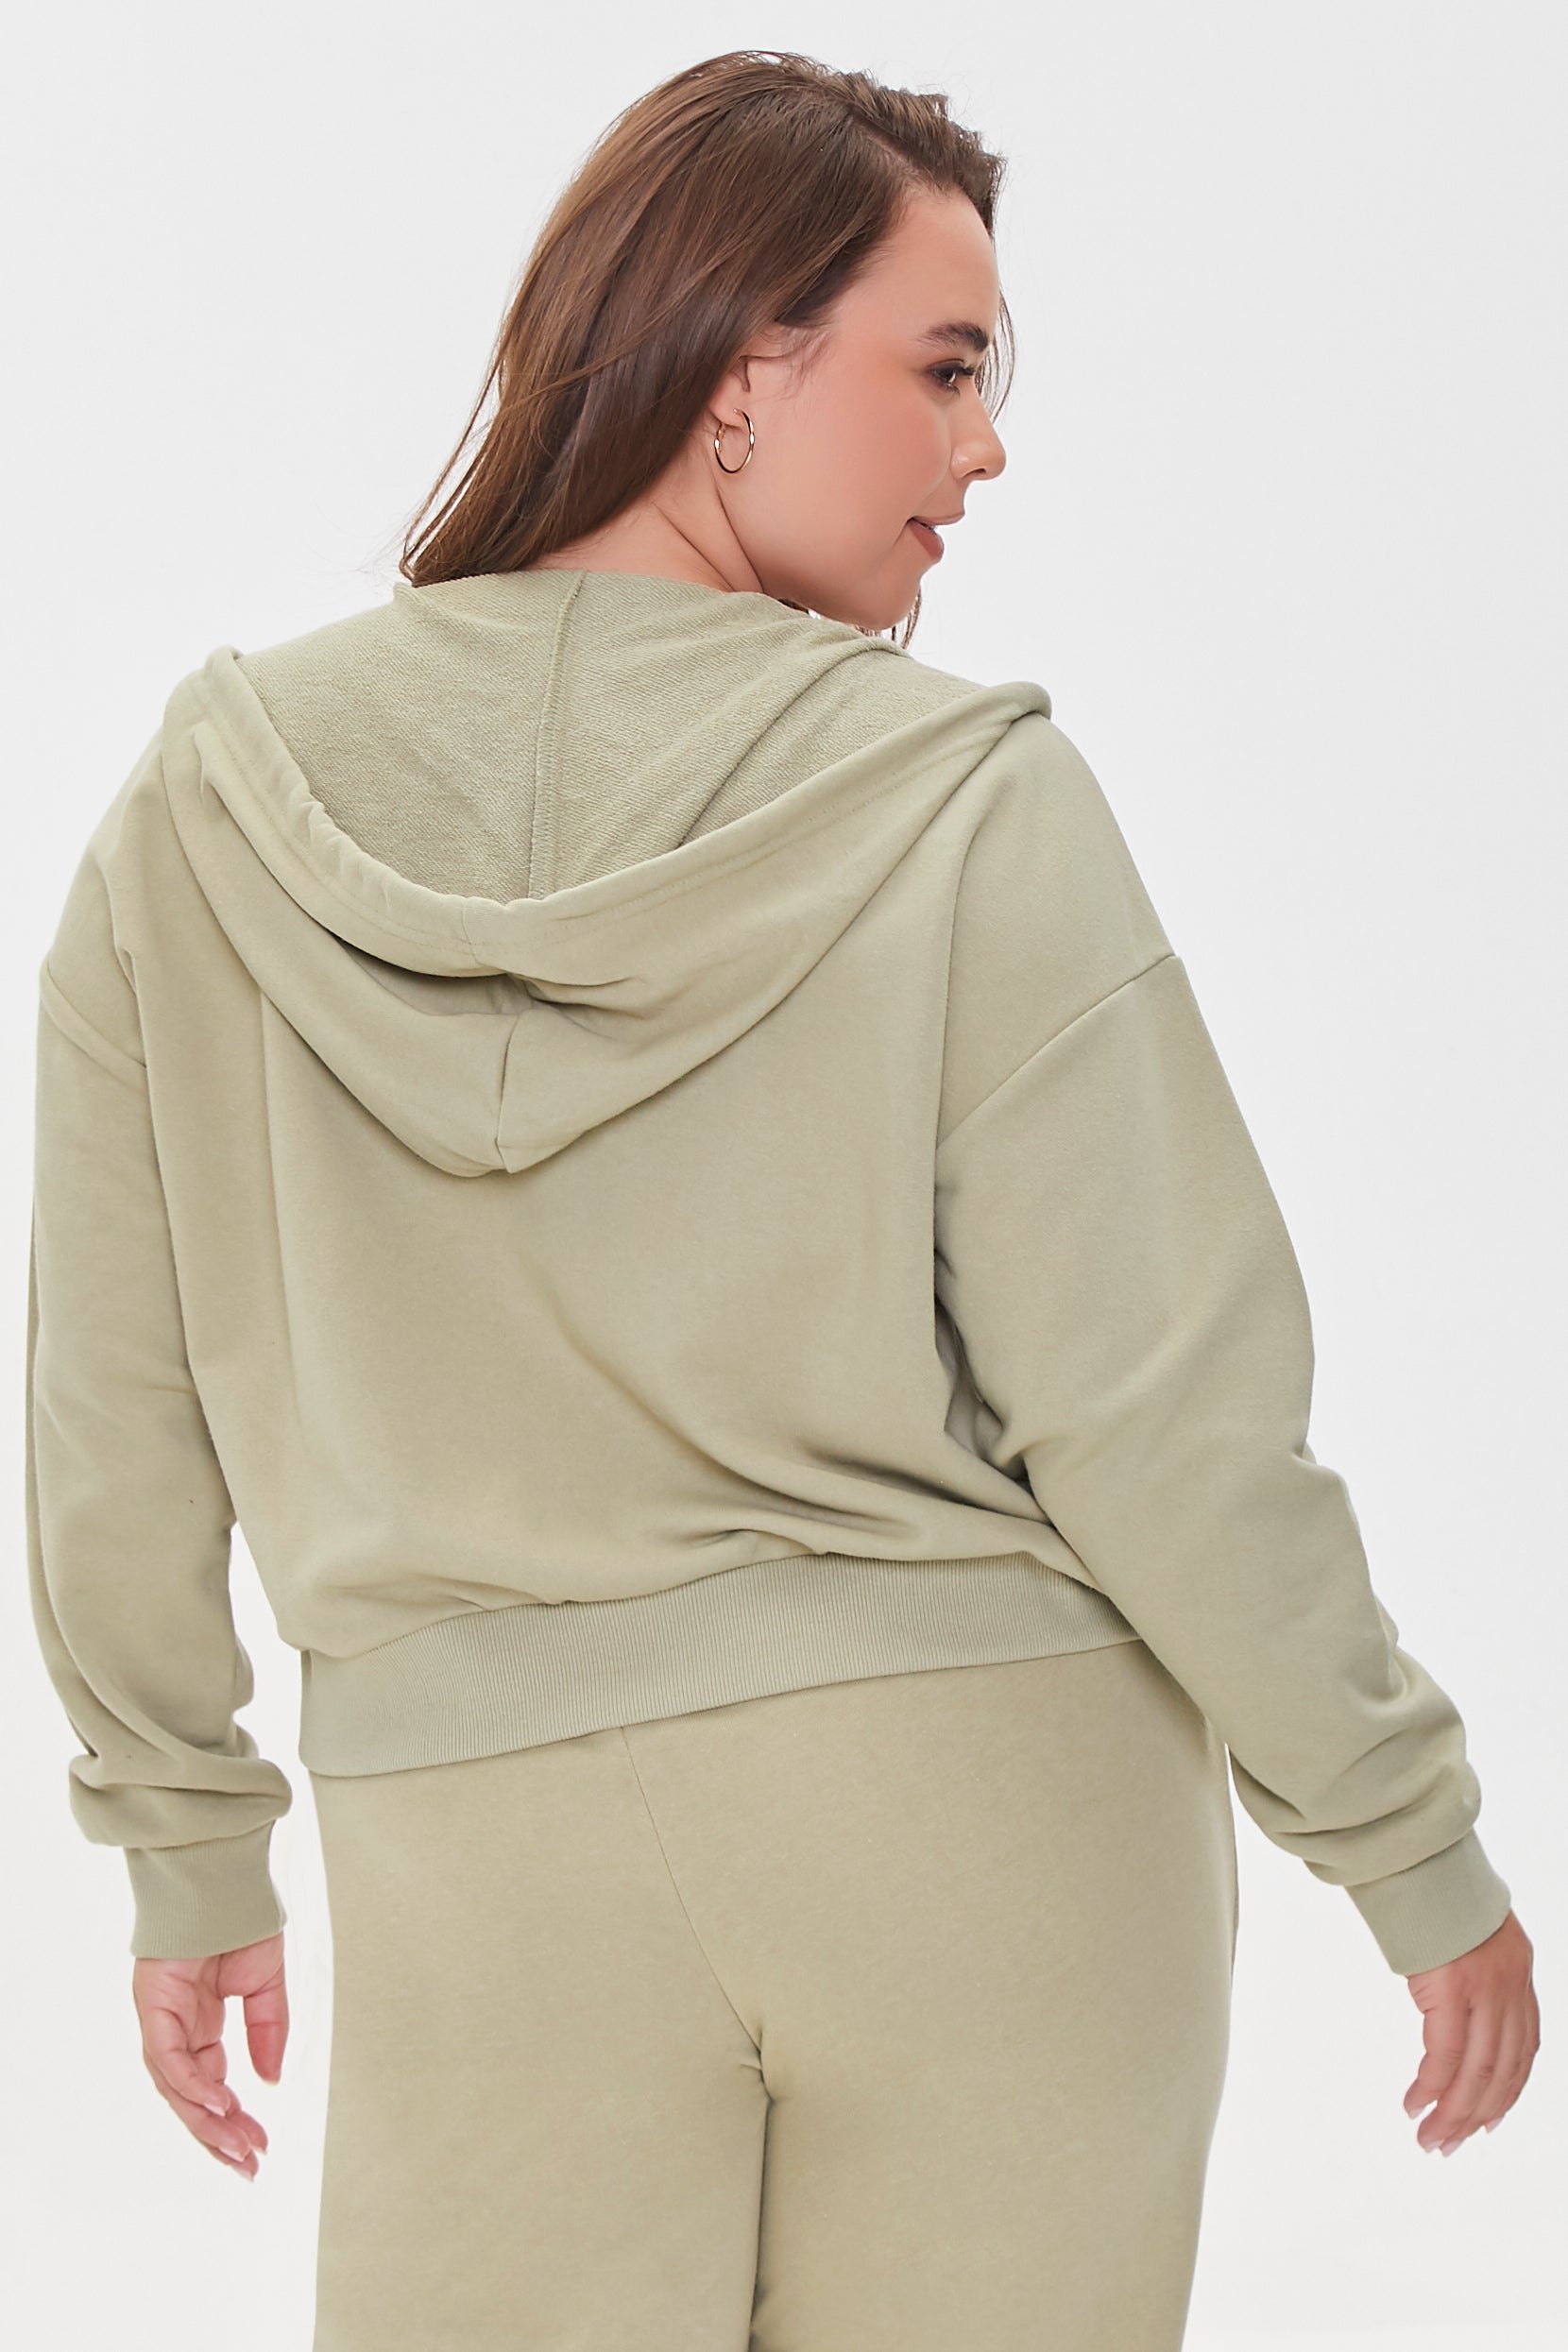 Shop For Women's Plus Size Fleece Zip-Up Hoodie